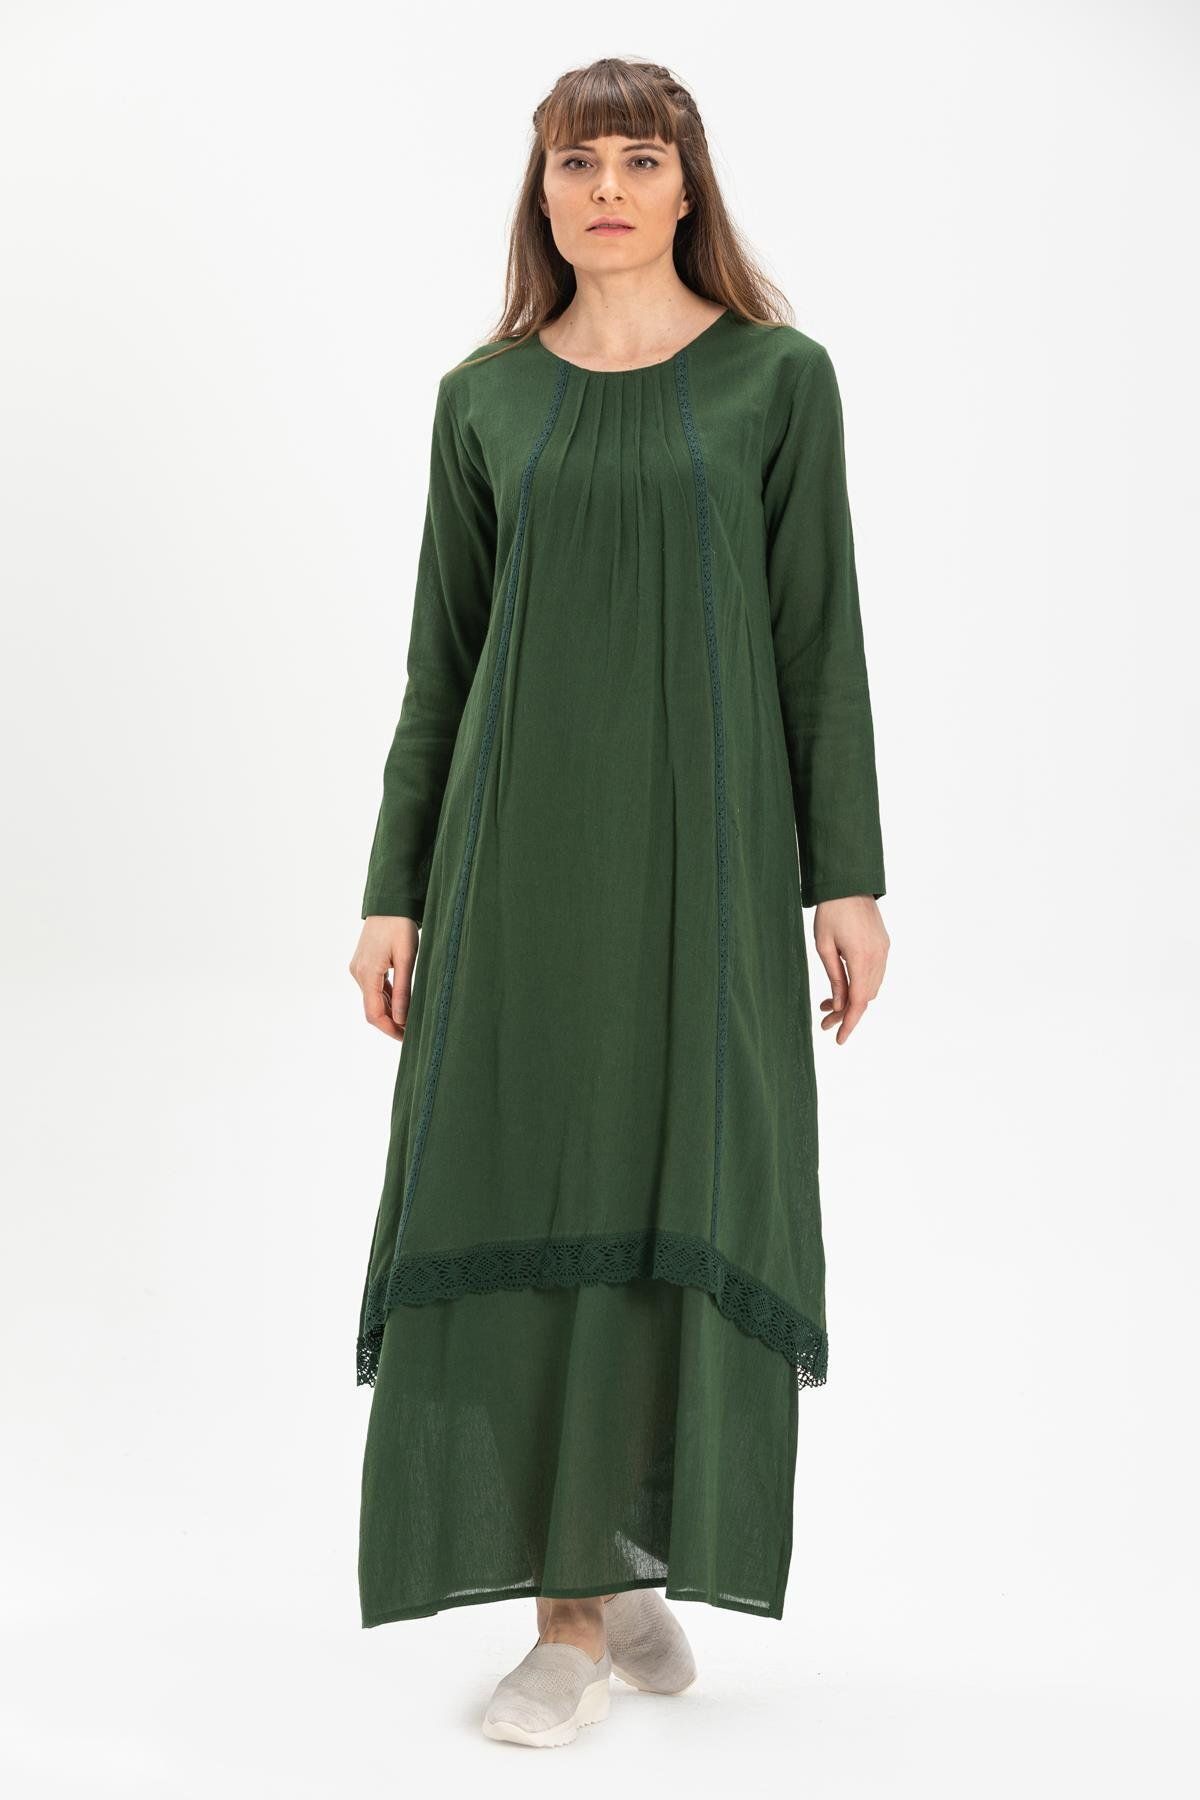 Eliş Şile Bezi Uzun Kol Şile Bezi Nervürlü Uzun Tesettür Elbise Yeşil Ysl